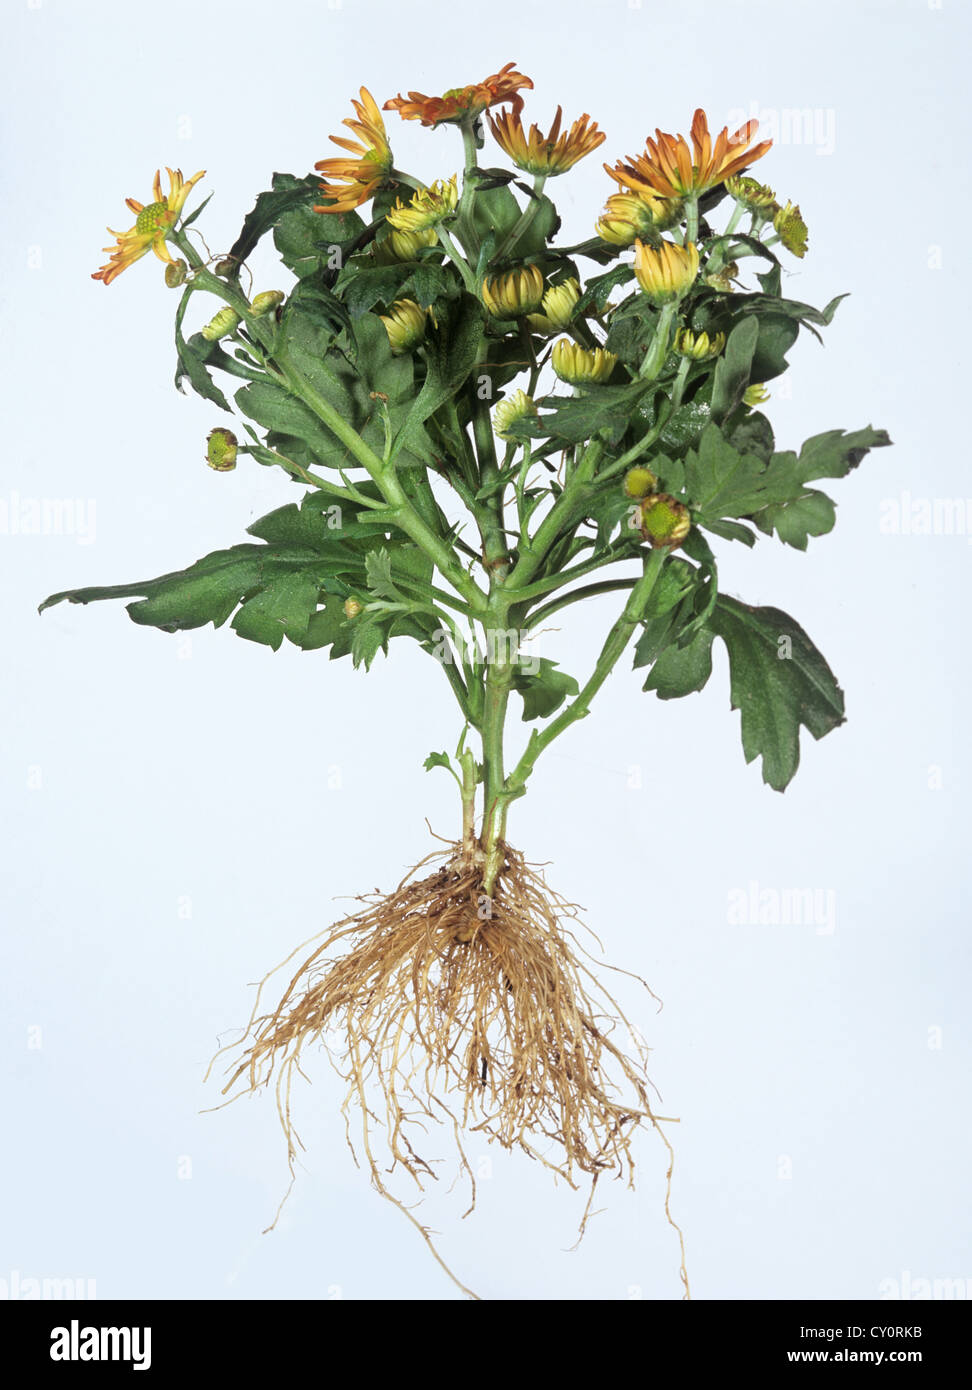 Chrysantheme Pflanze mit Blüten, Blättern und Wurzeln vor einem weißen Hintergrund Stockfoto